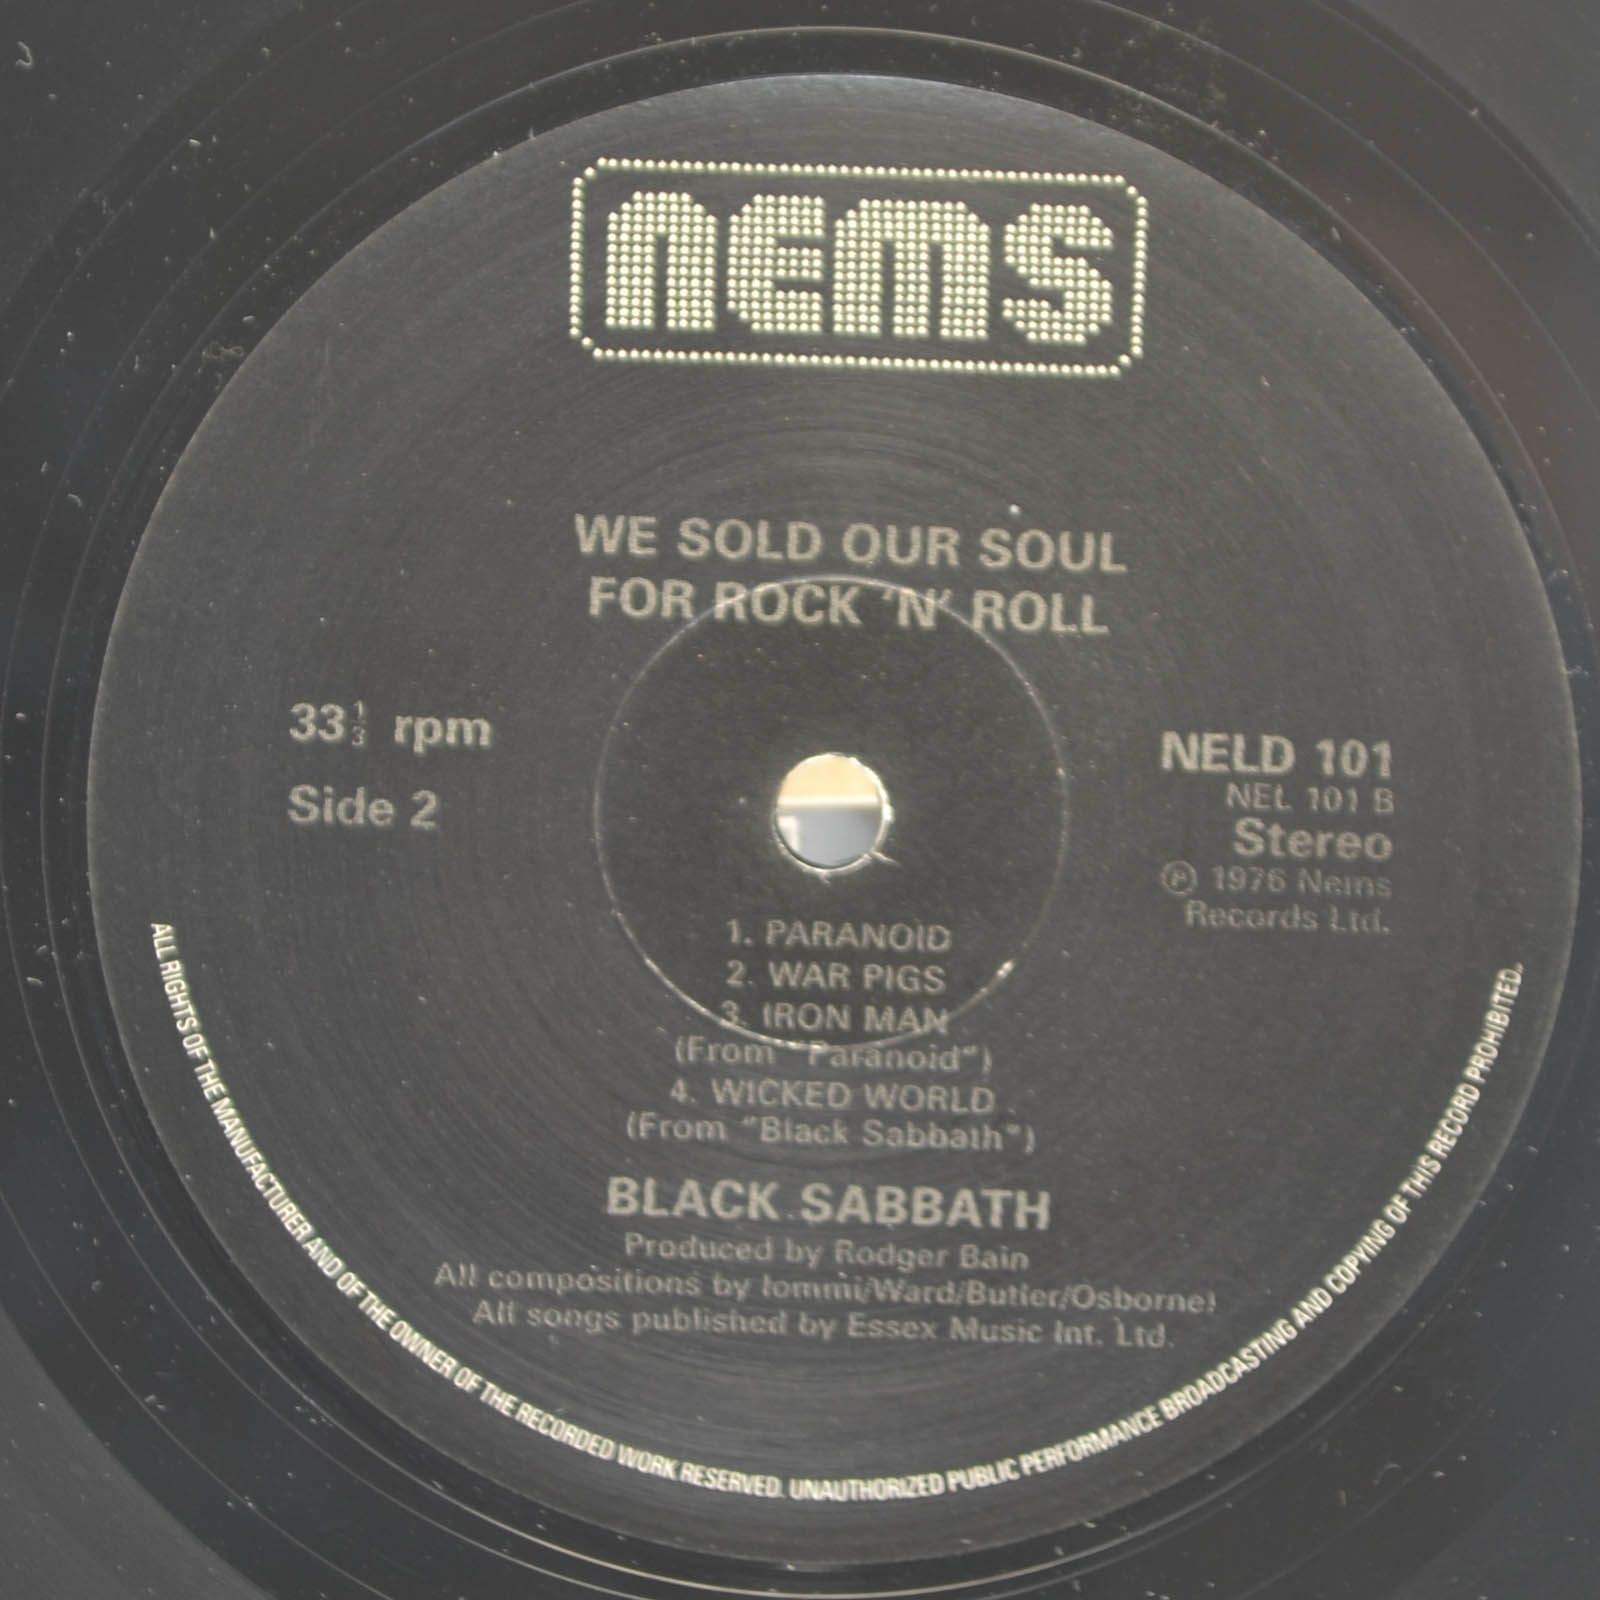 Black Sabbath — We Sold Our Soul For Rock 'N' Roll (2LP, UK), 1975